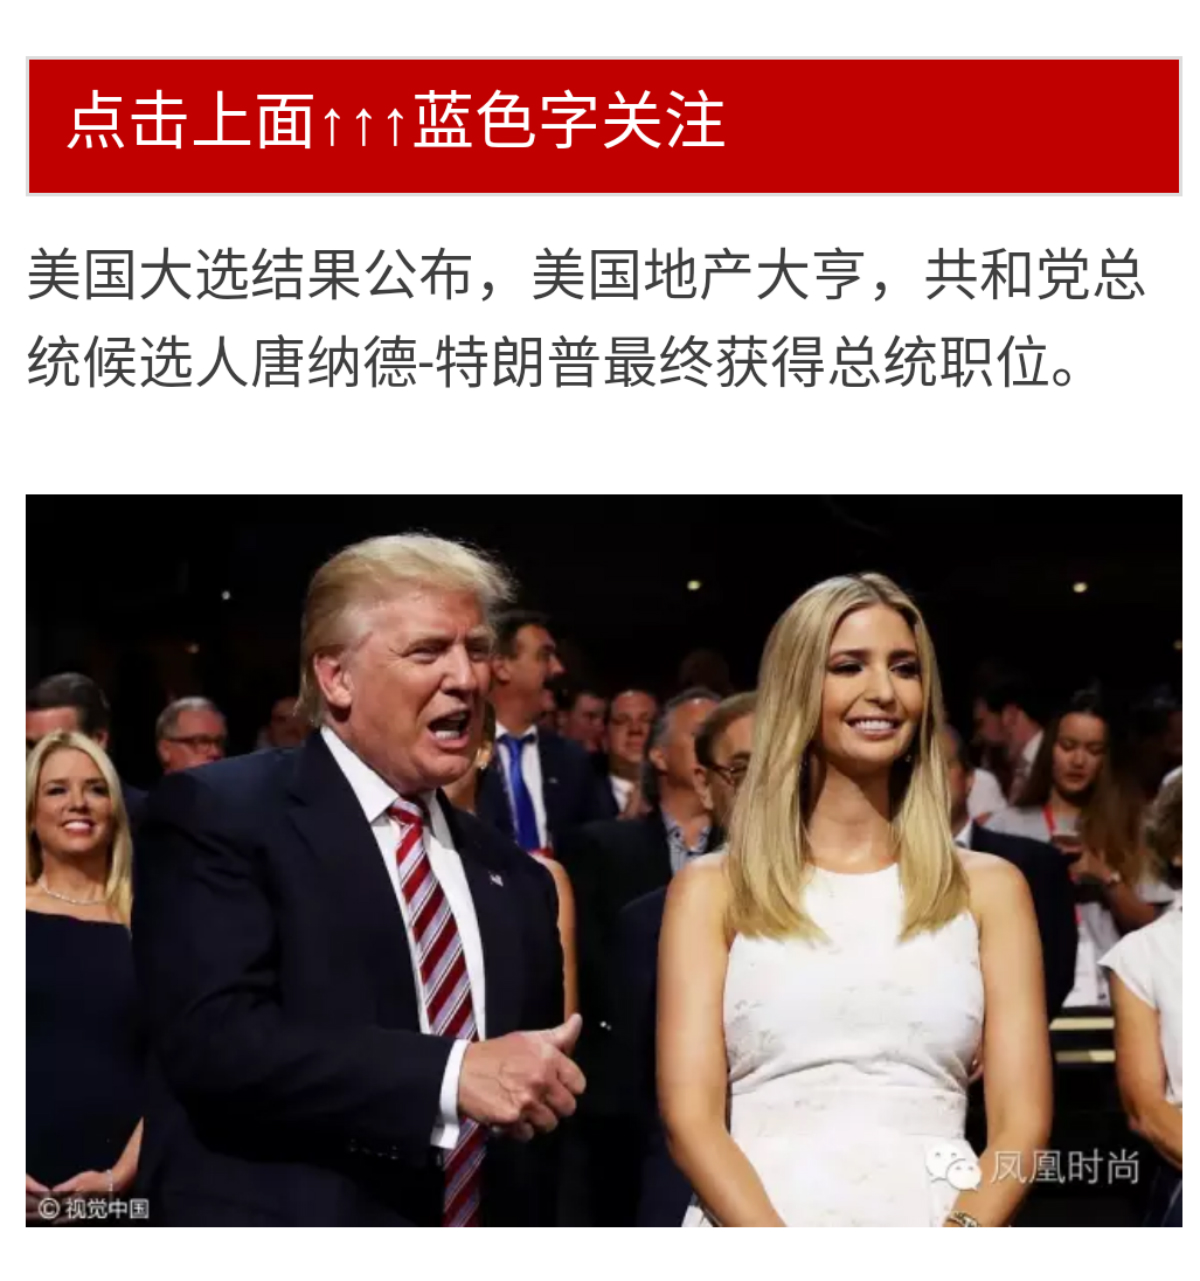 Sociala medier i Kina ger ofta positiv bild av Trump